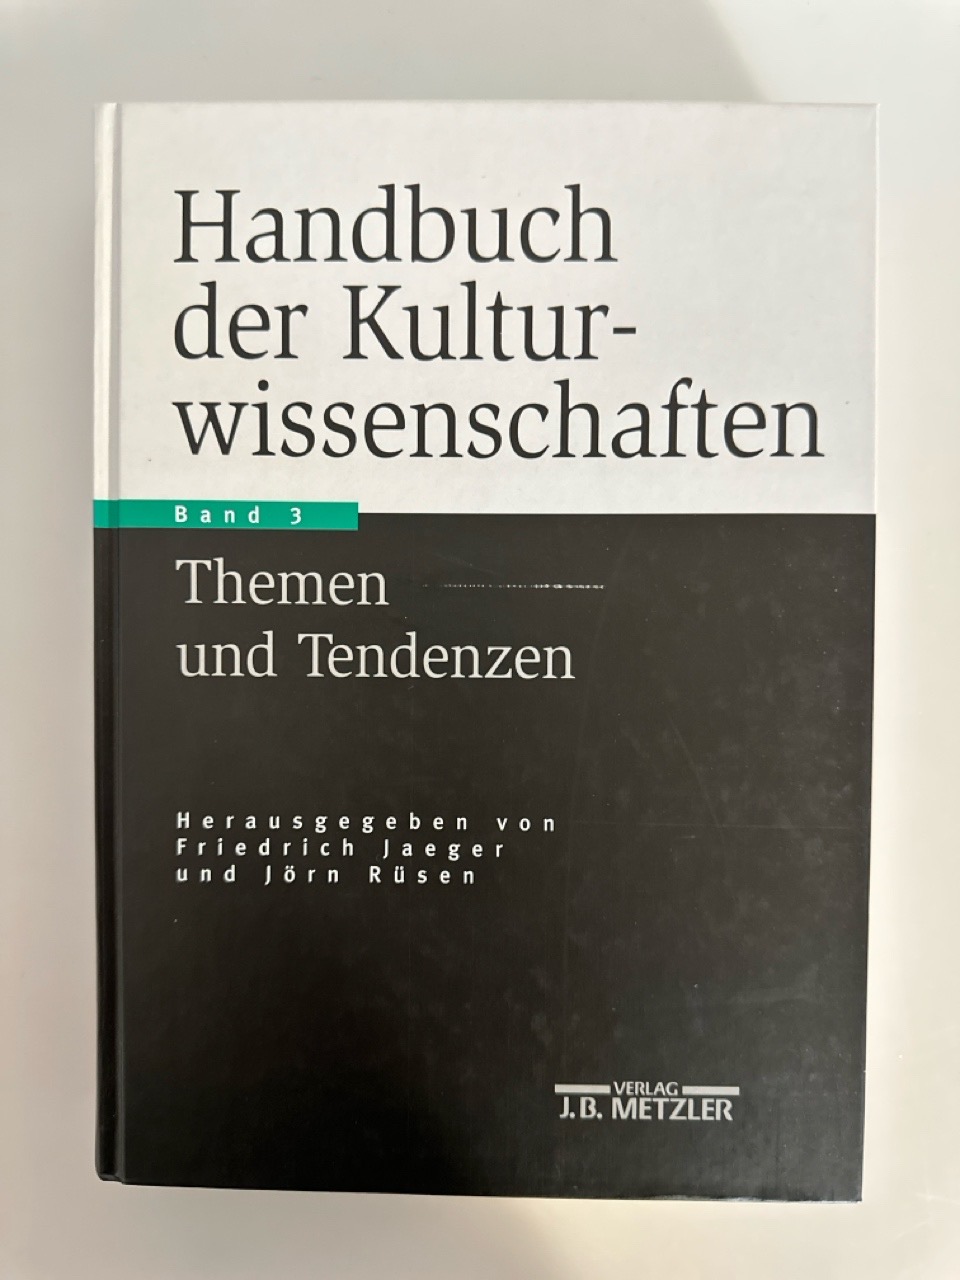 Handbuch der Kulturwissenschaften: Band 3: Themen und Tendenzen. - Jaeger, Friedrich, Burkhard Liebsch und Jörn Rüsen